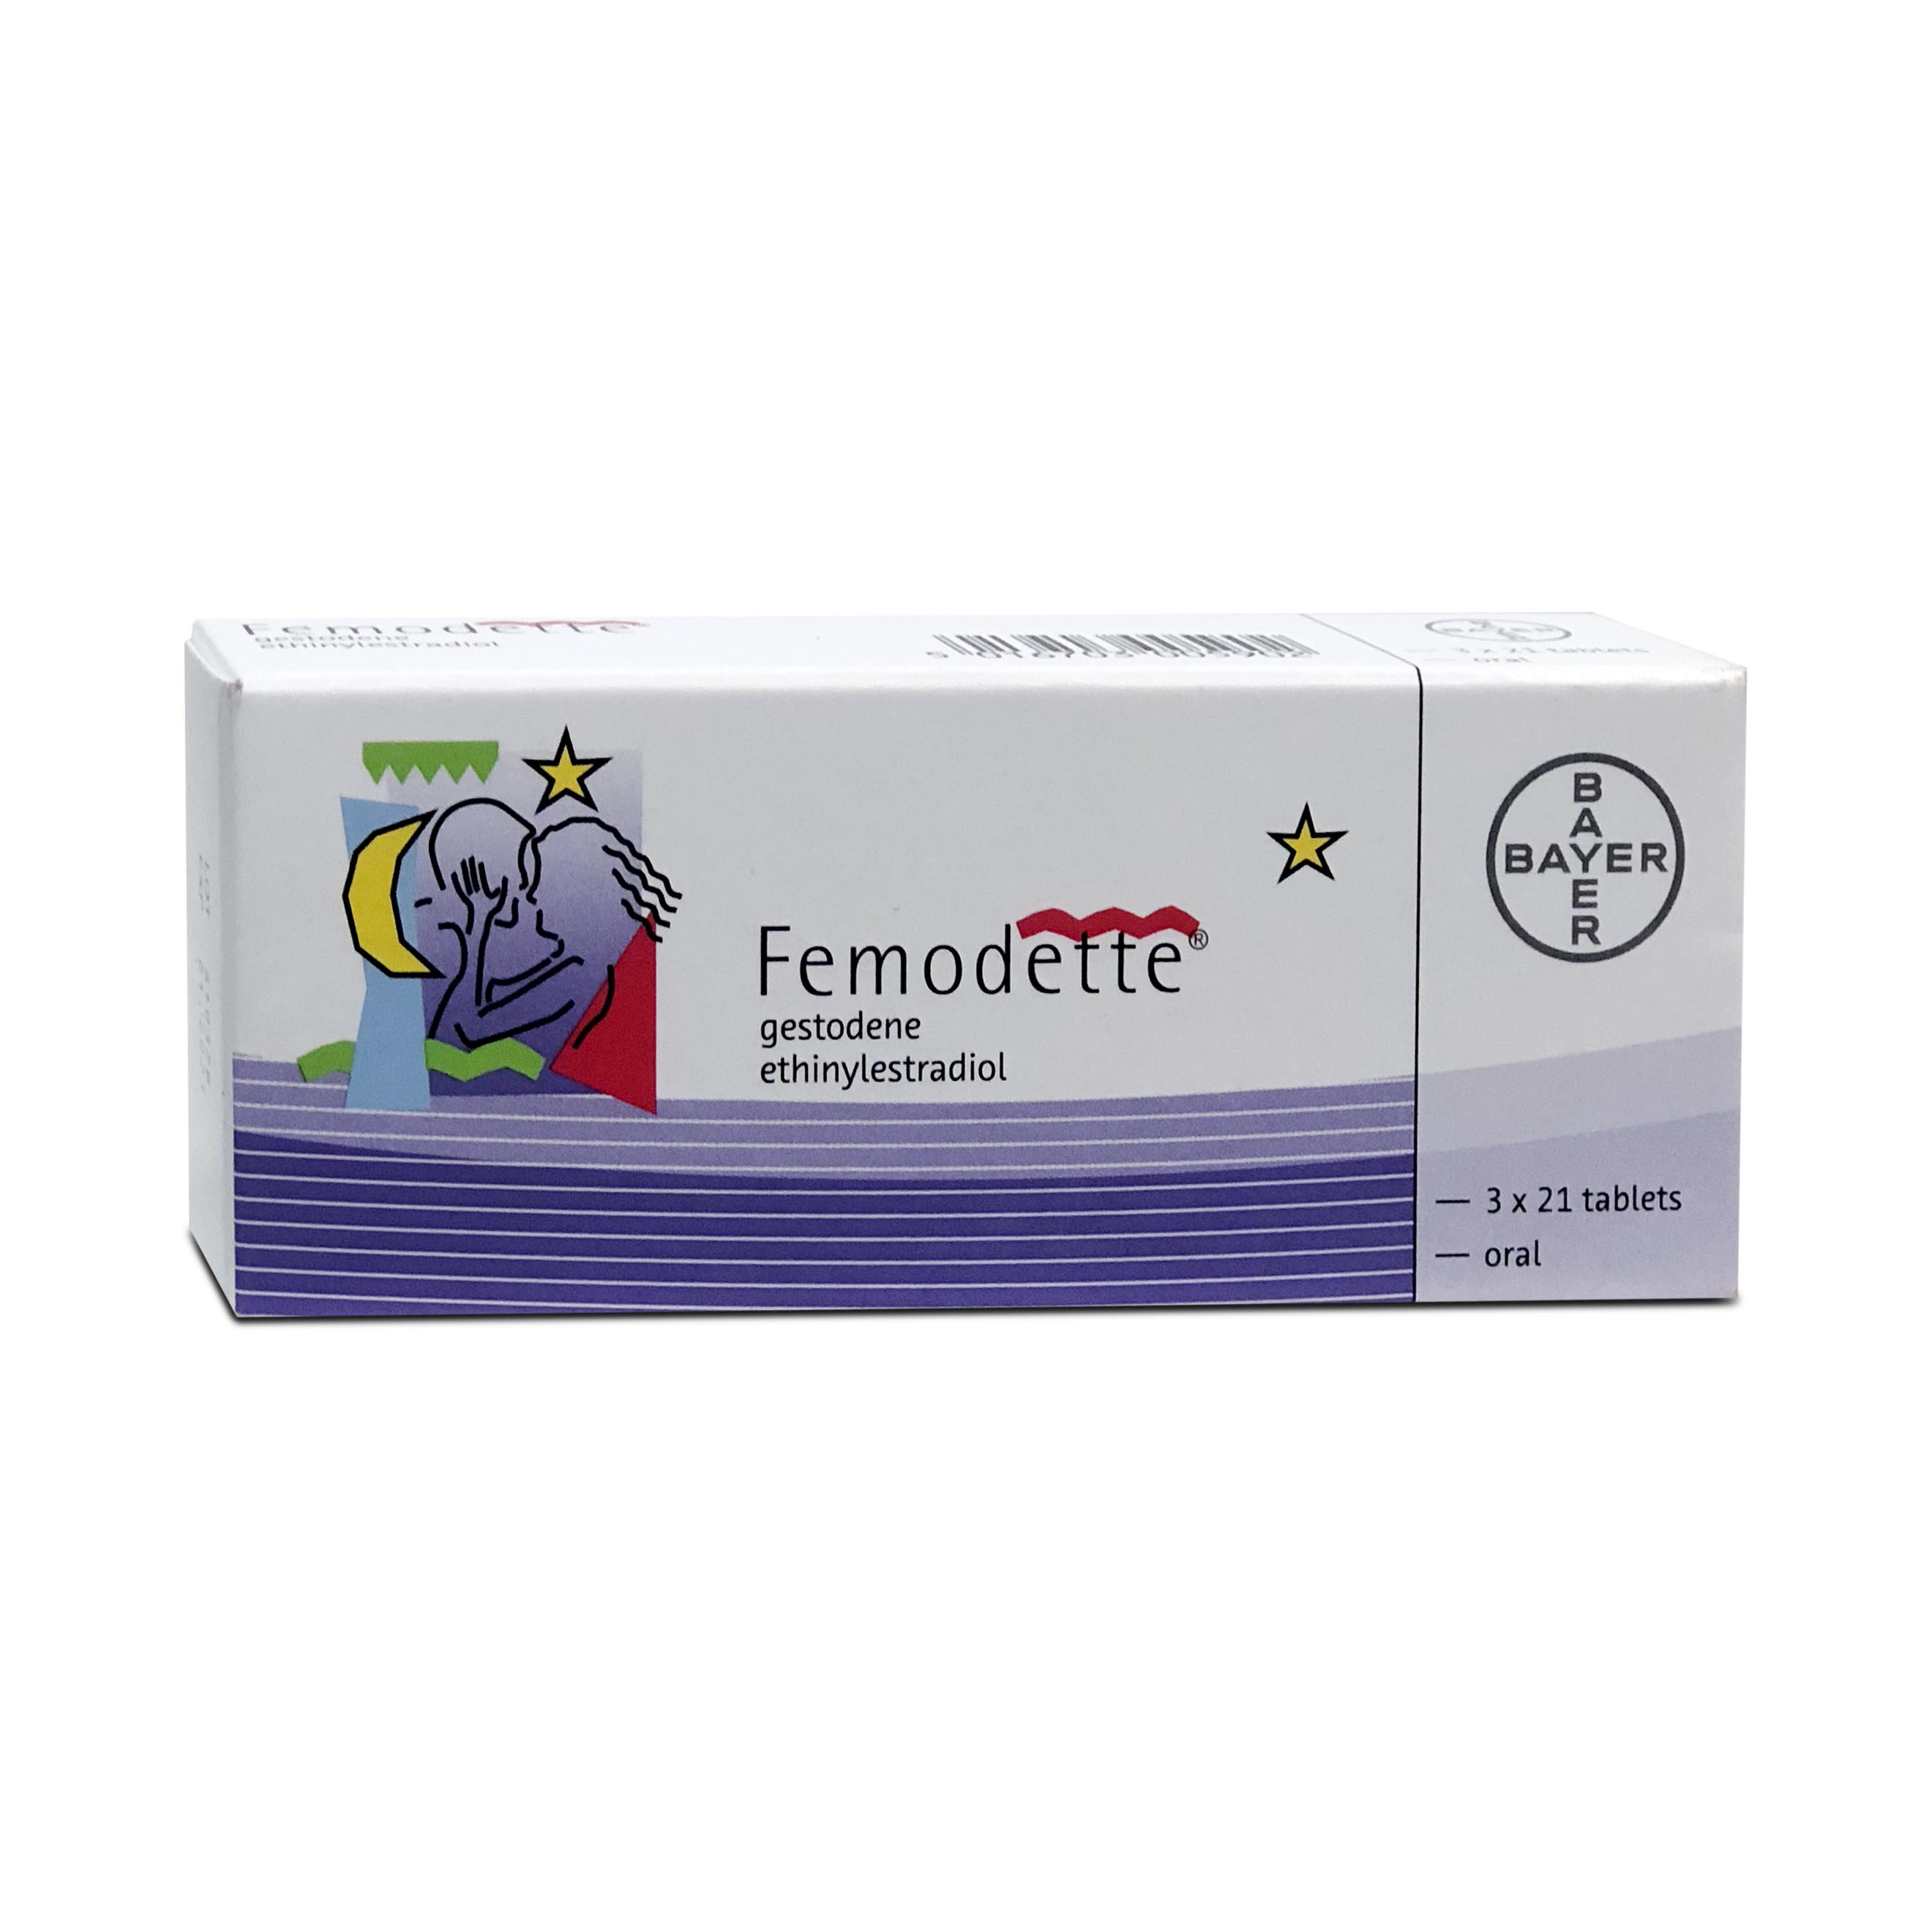 Femodette 3 x 21 tablets Bayer